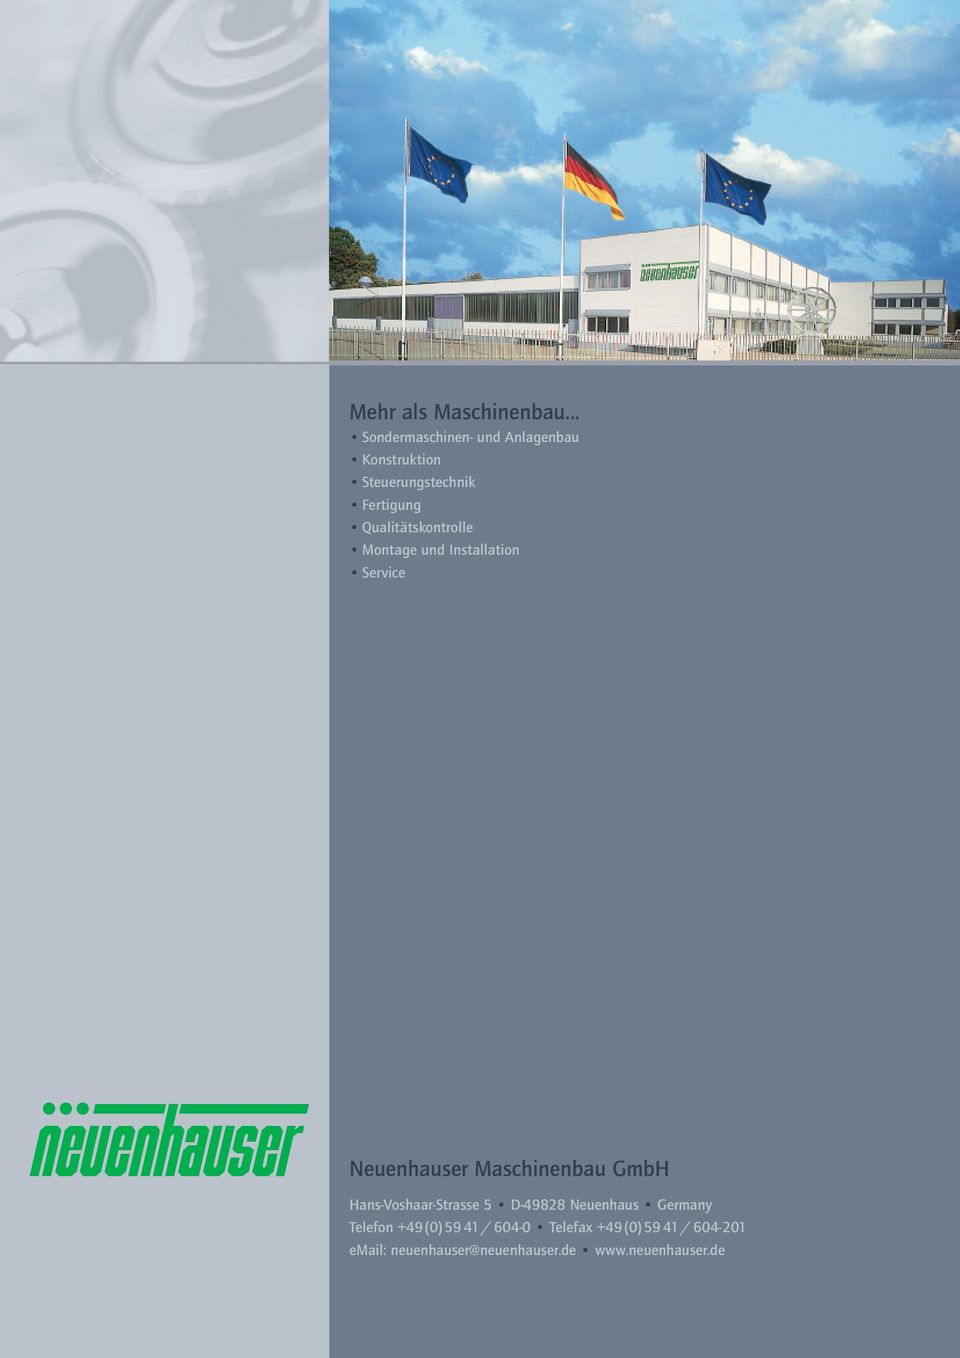 Qualitätskontrolle Montage und Installation Service Neuenhauser Maschinenbau GmbH